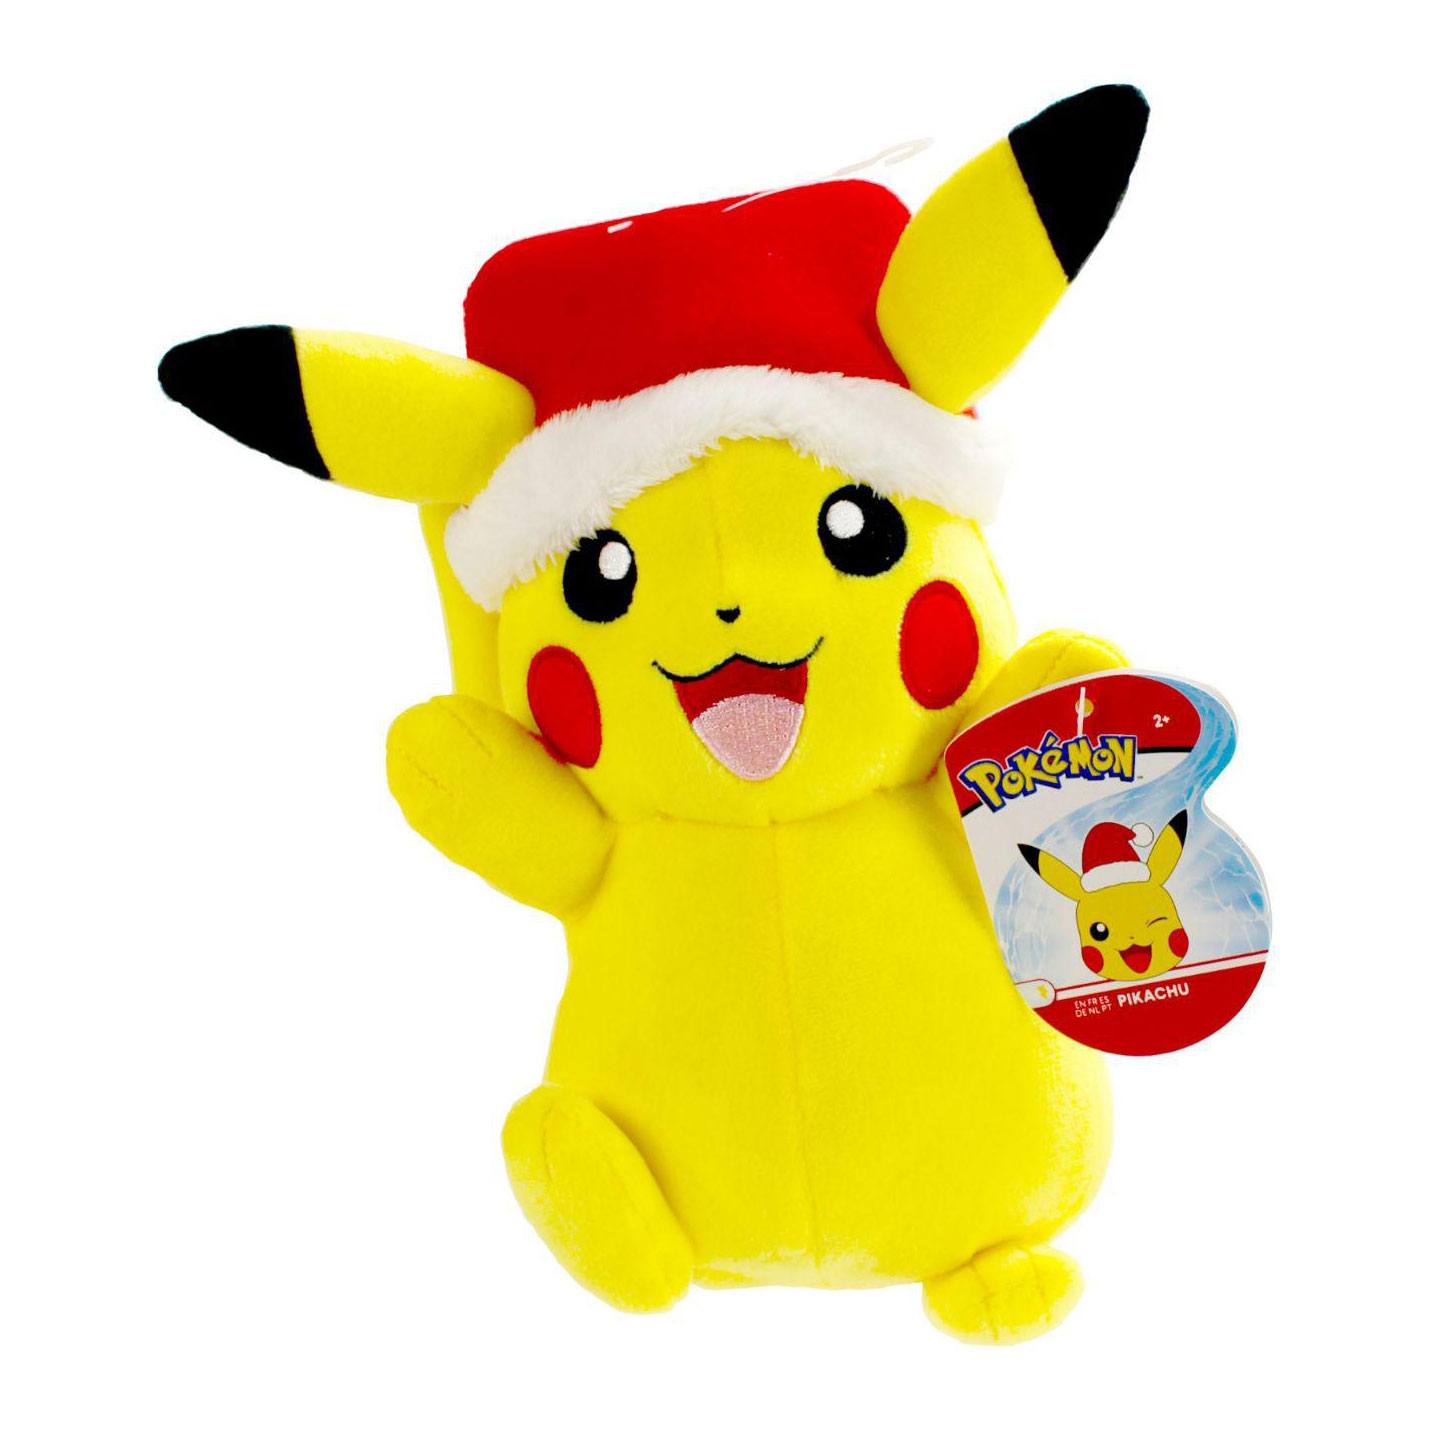 Pokémon Plüschfiguren 20 cm Christmas Edition Pikachu